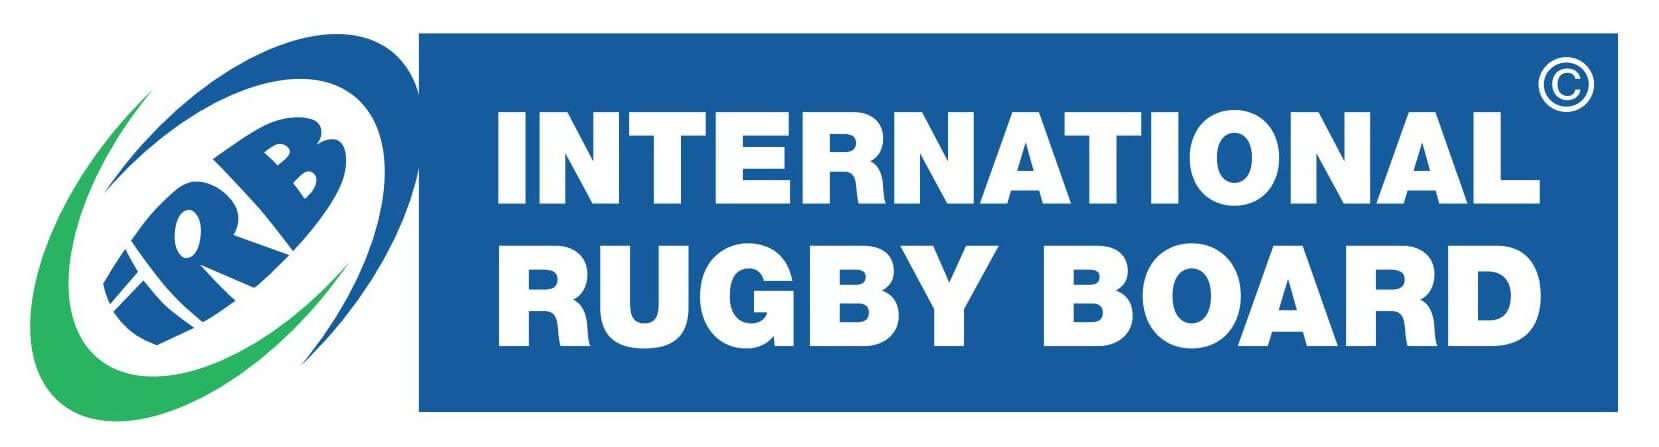 International Rugby Board IRB logo